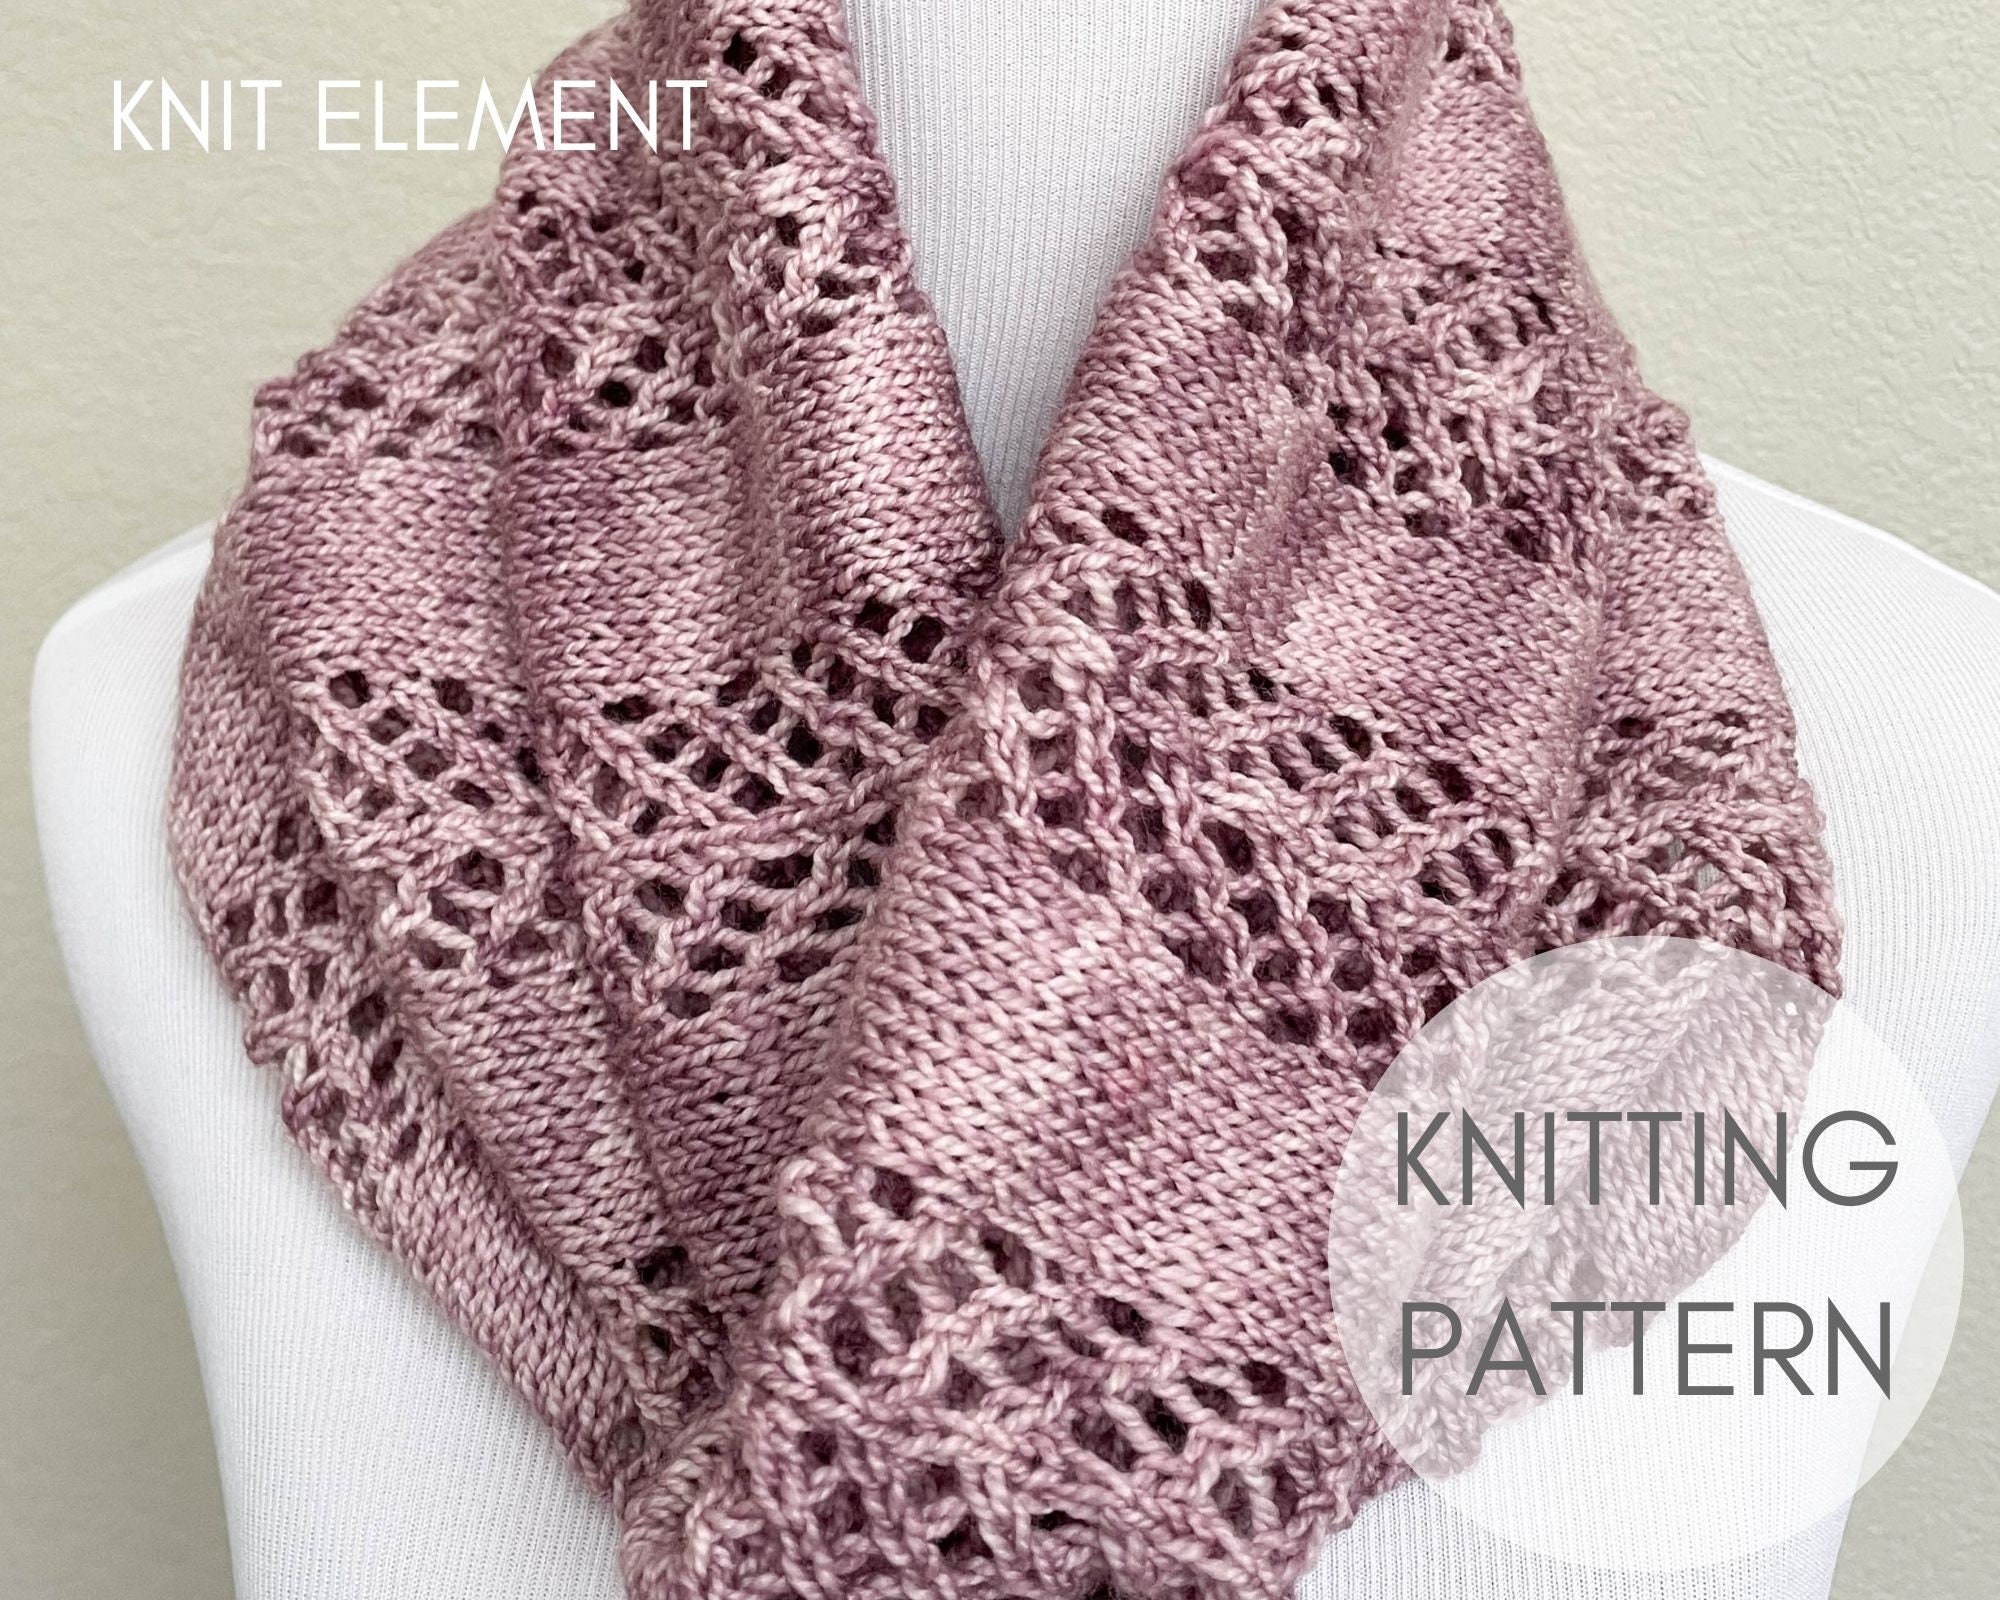 63 Crochet-scarves/cowls-DK weight yarn ideas